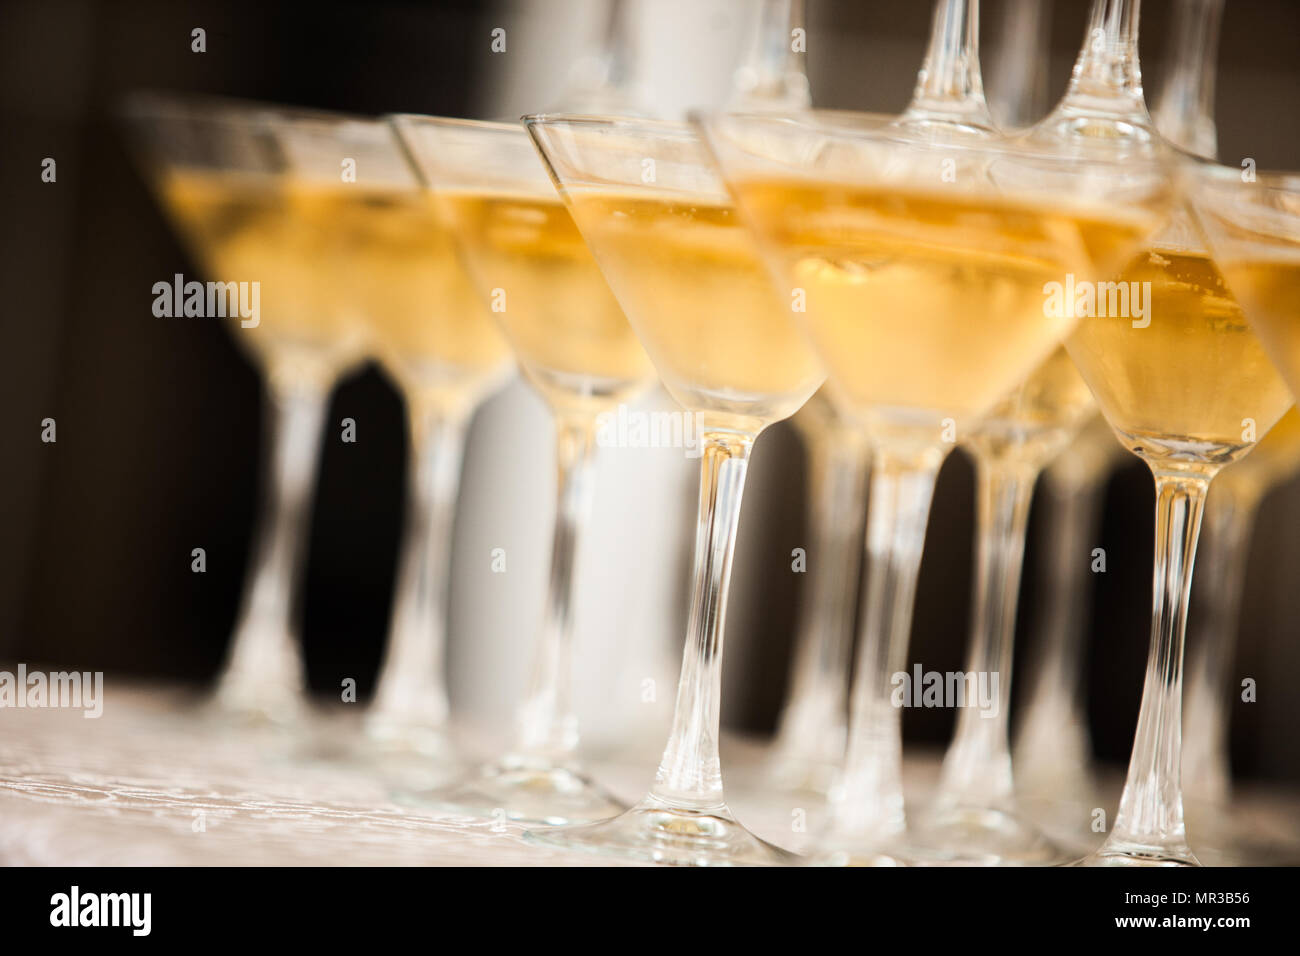 Pyramide de wineglasses avec vin blanc étincelaient sur l'événement Banque D'Images